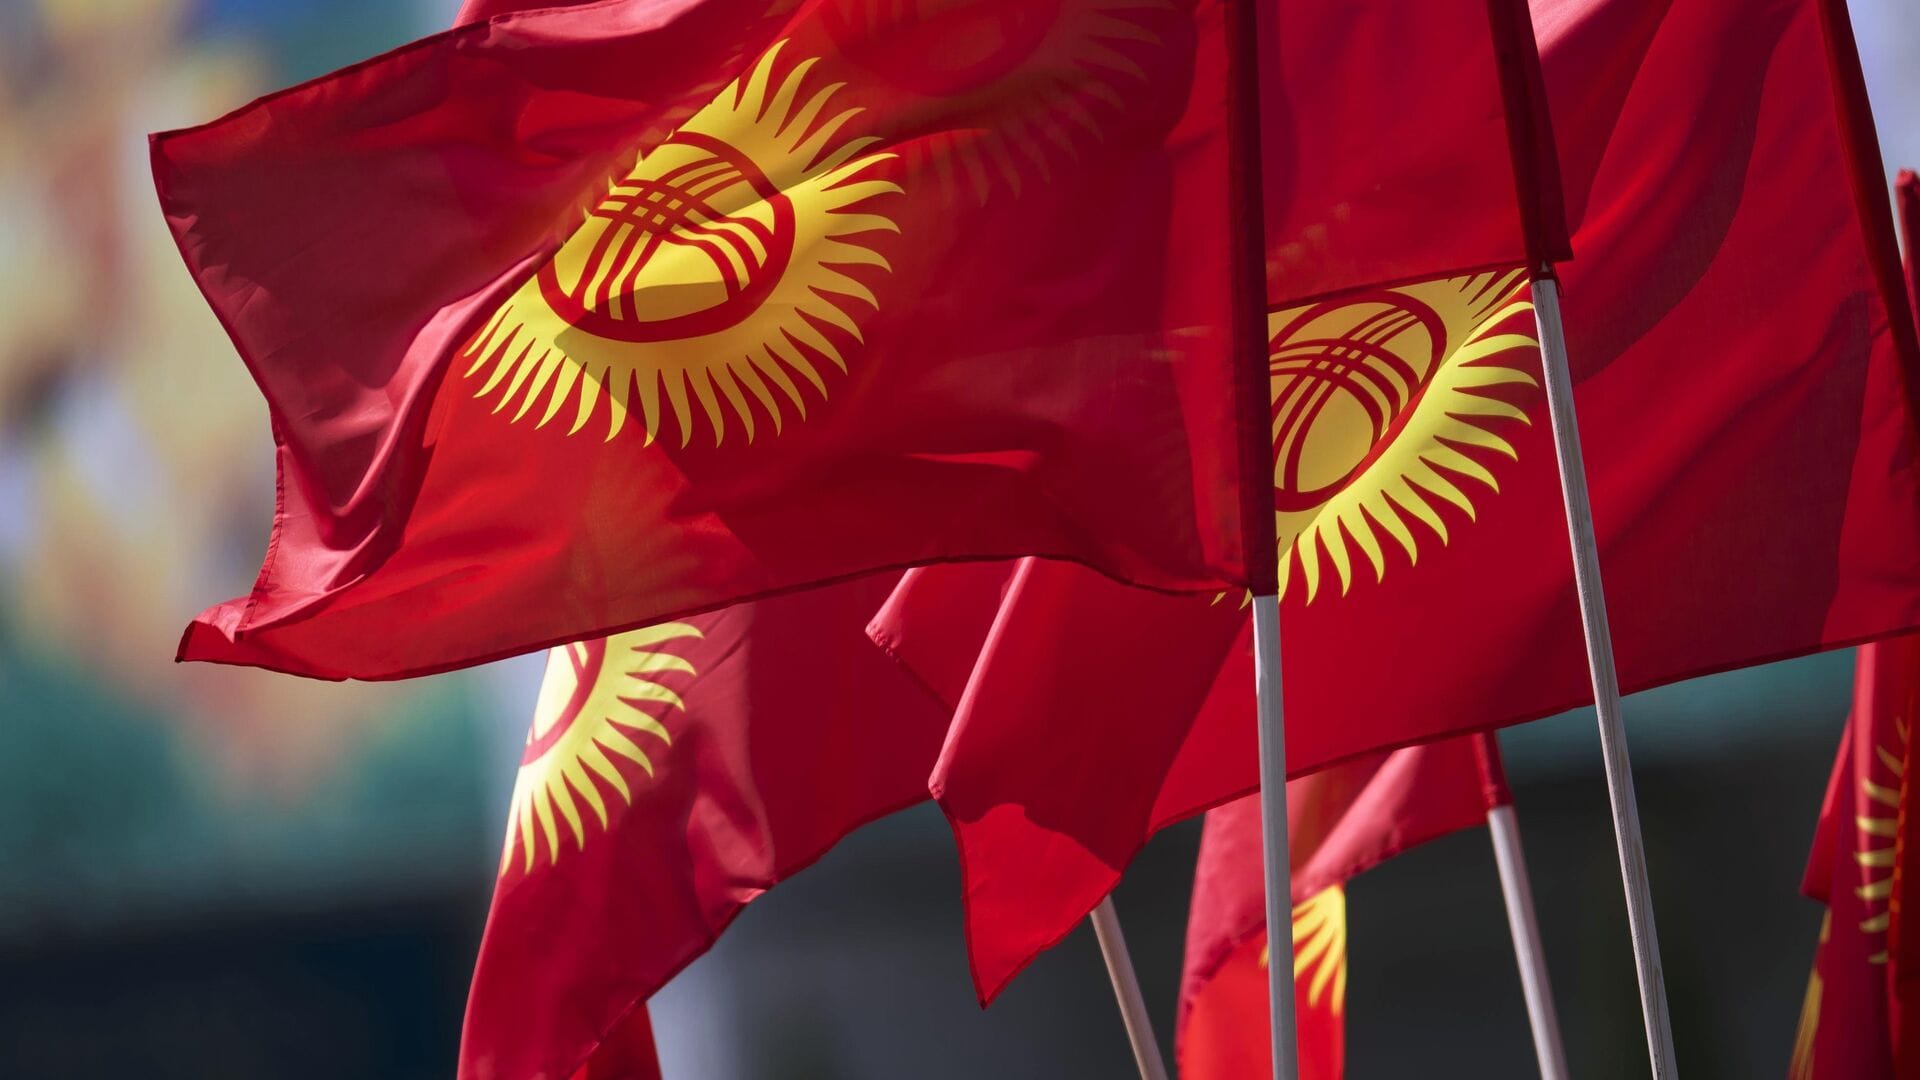 Налоги, продажа активов и гранты – за счет каких доходов вырос бюджет Кыргызстана?